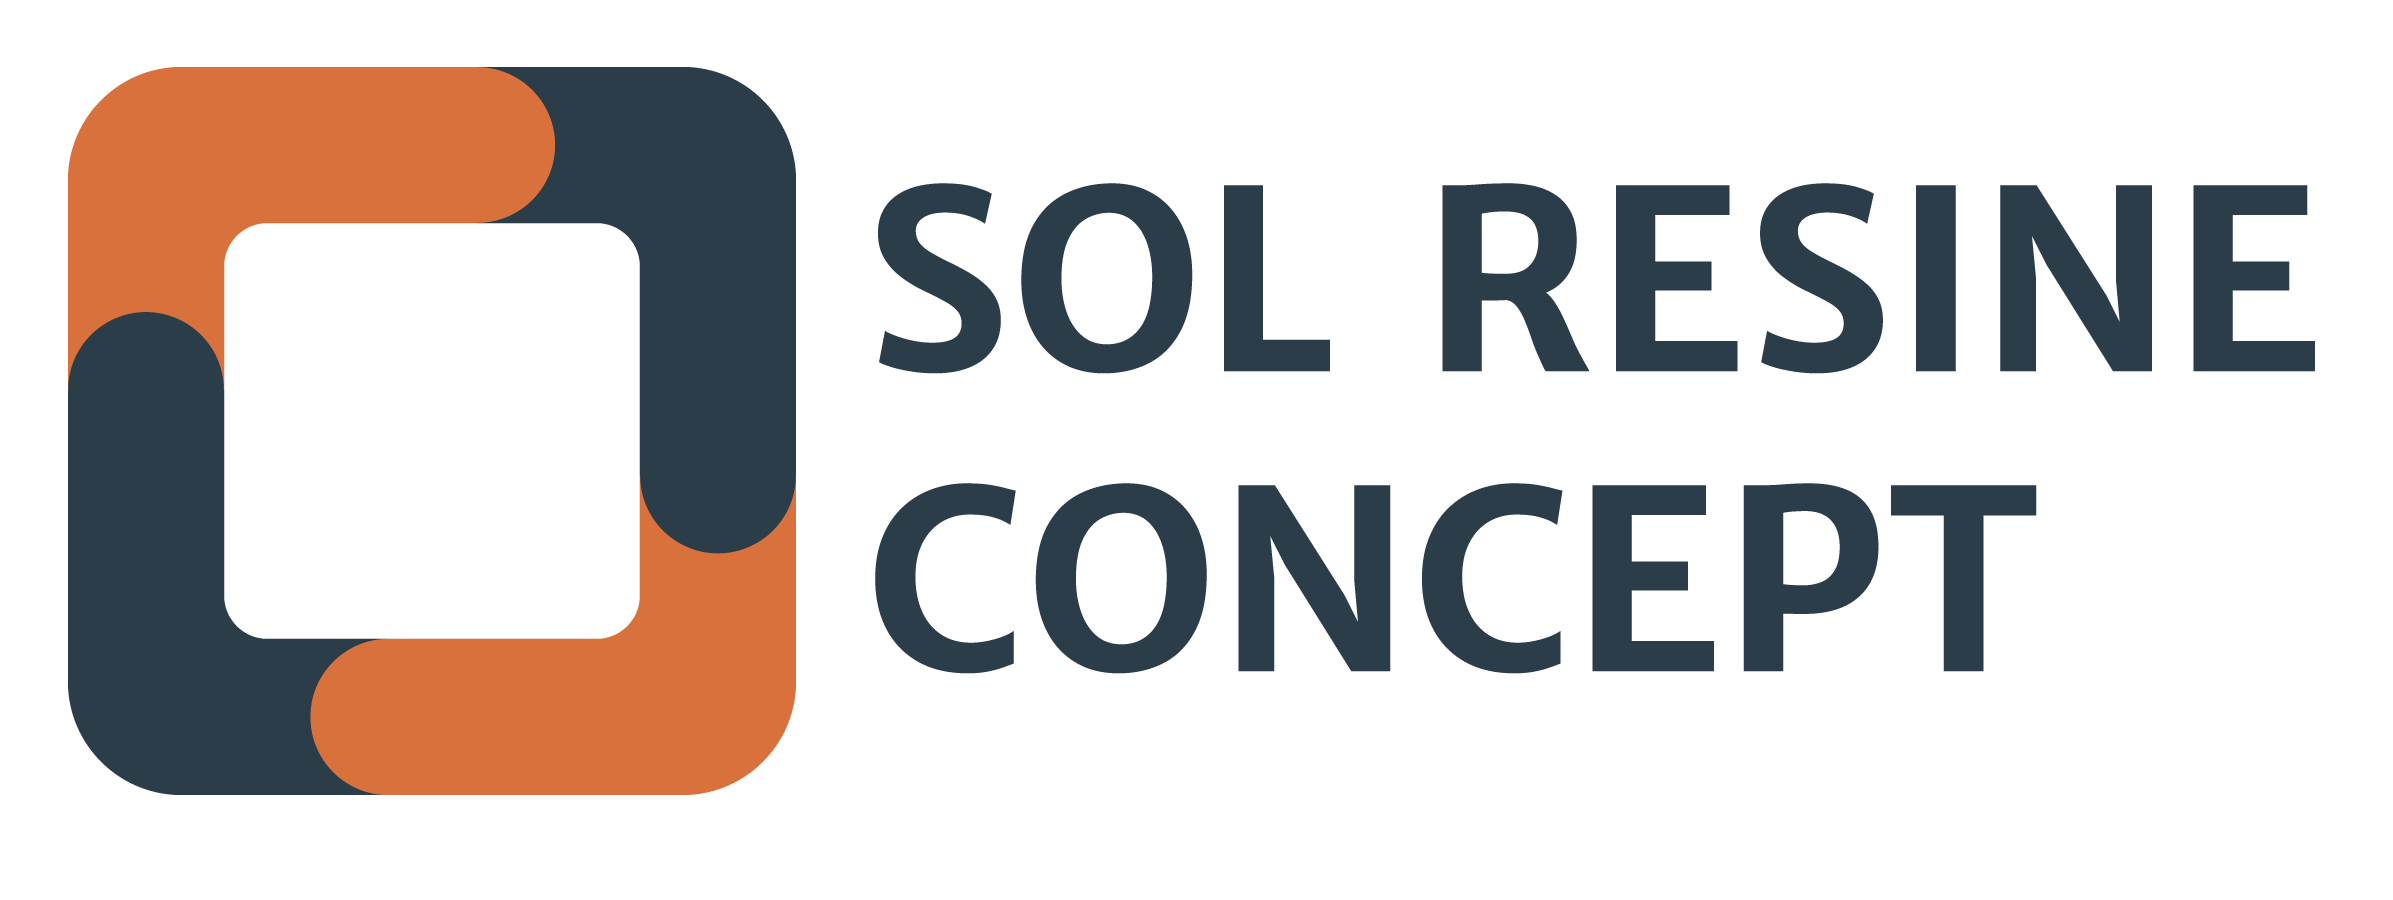 Sol Resine Concept